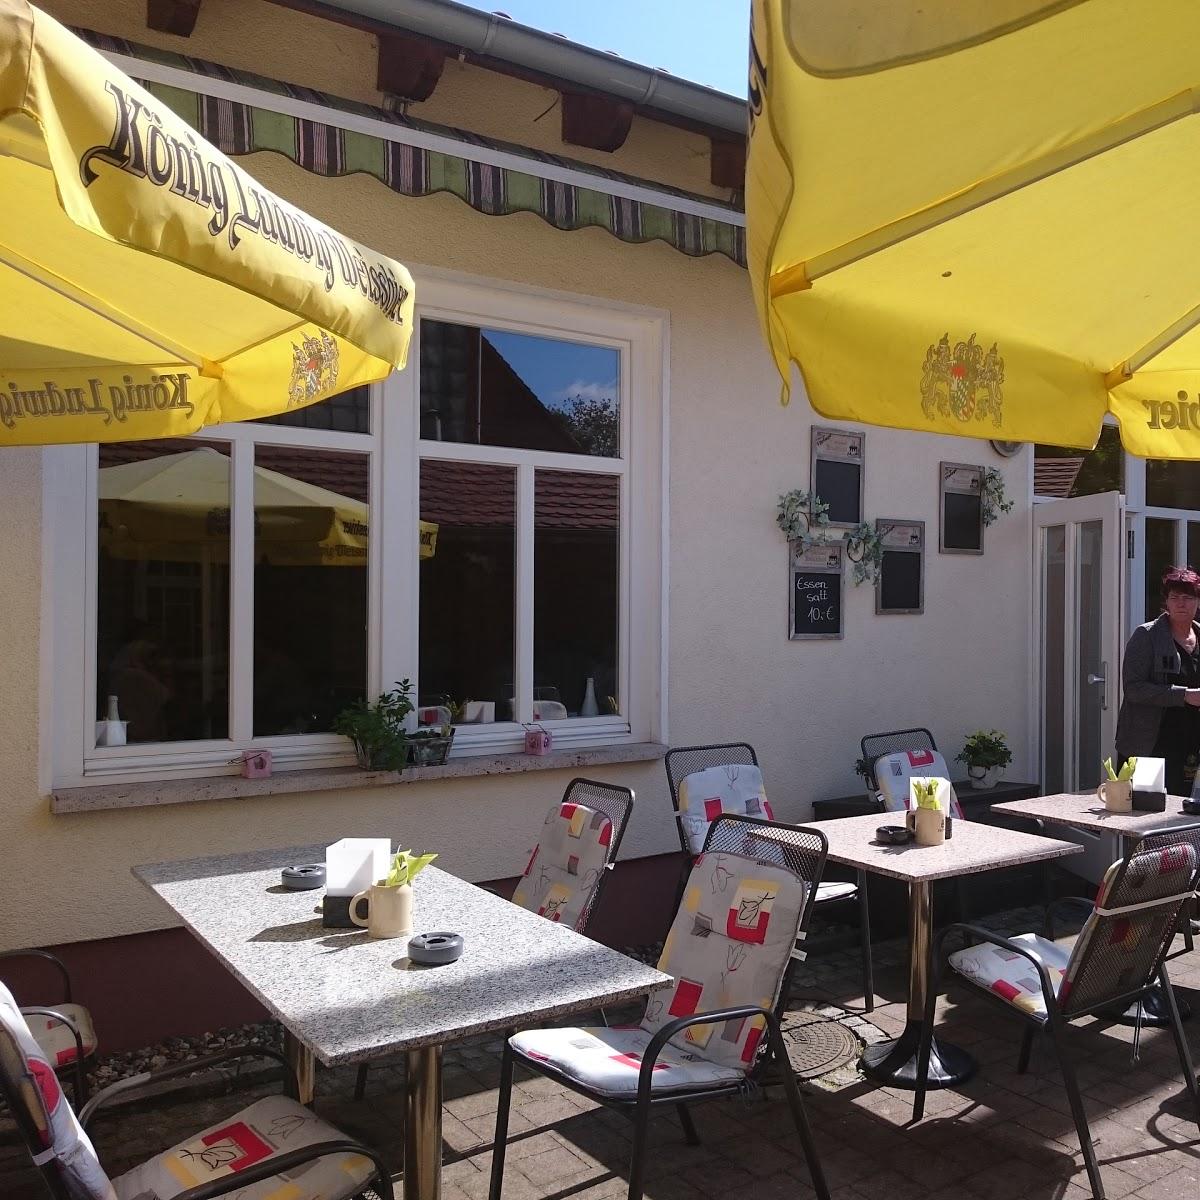 Restaurant "zum Blauen Bock" in Gerbershausen